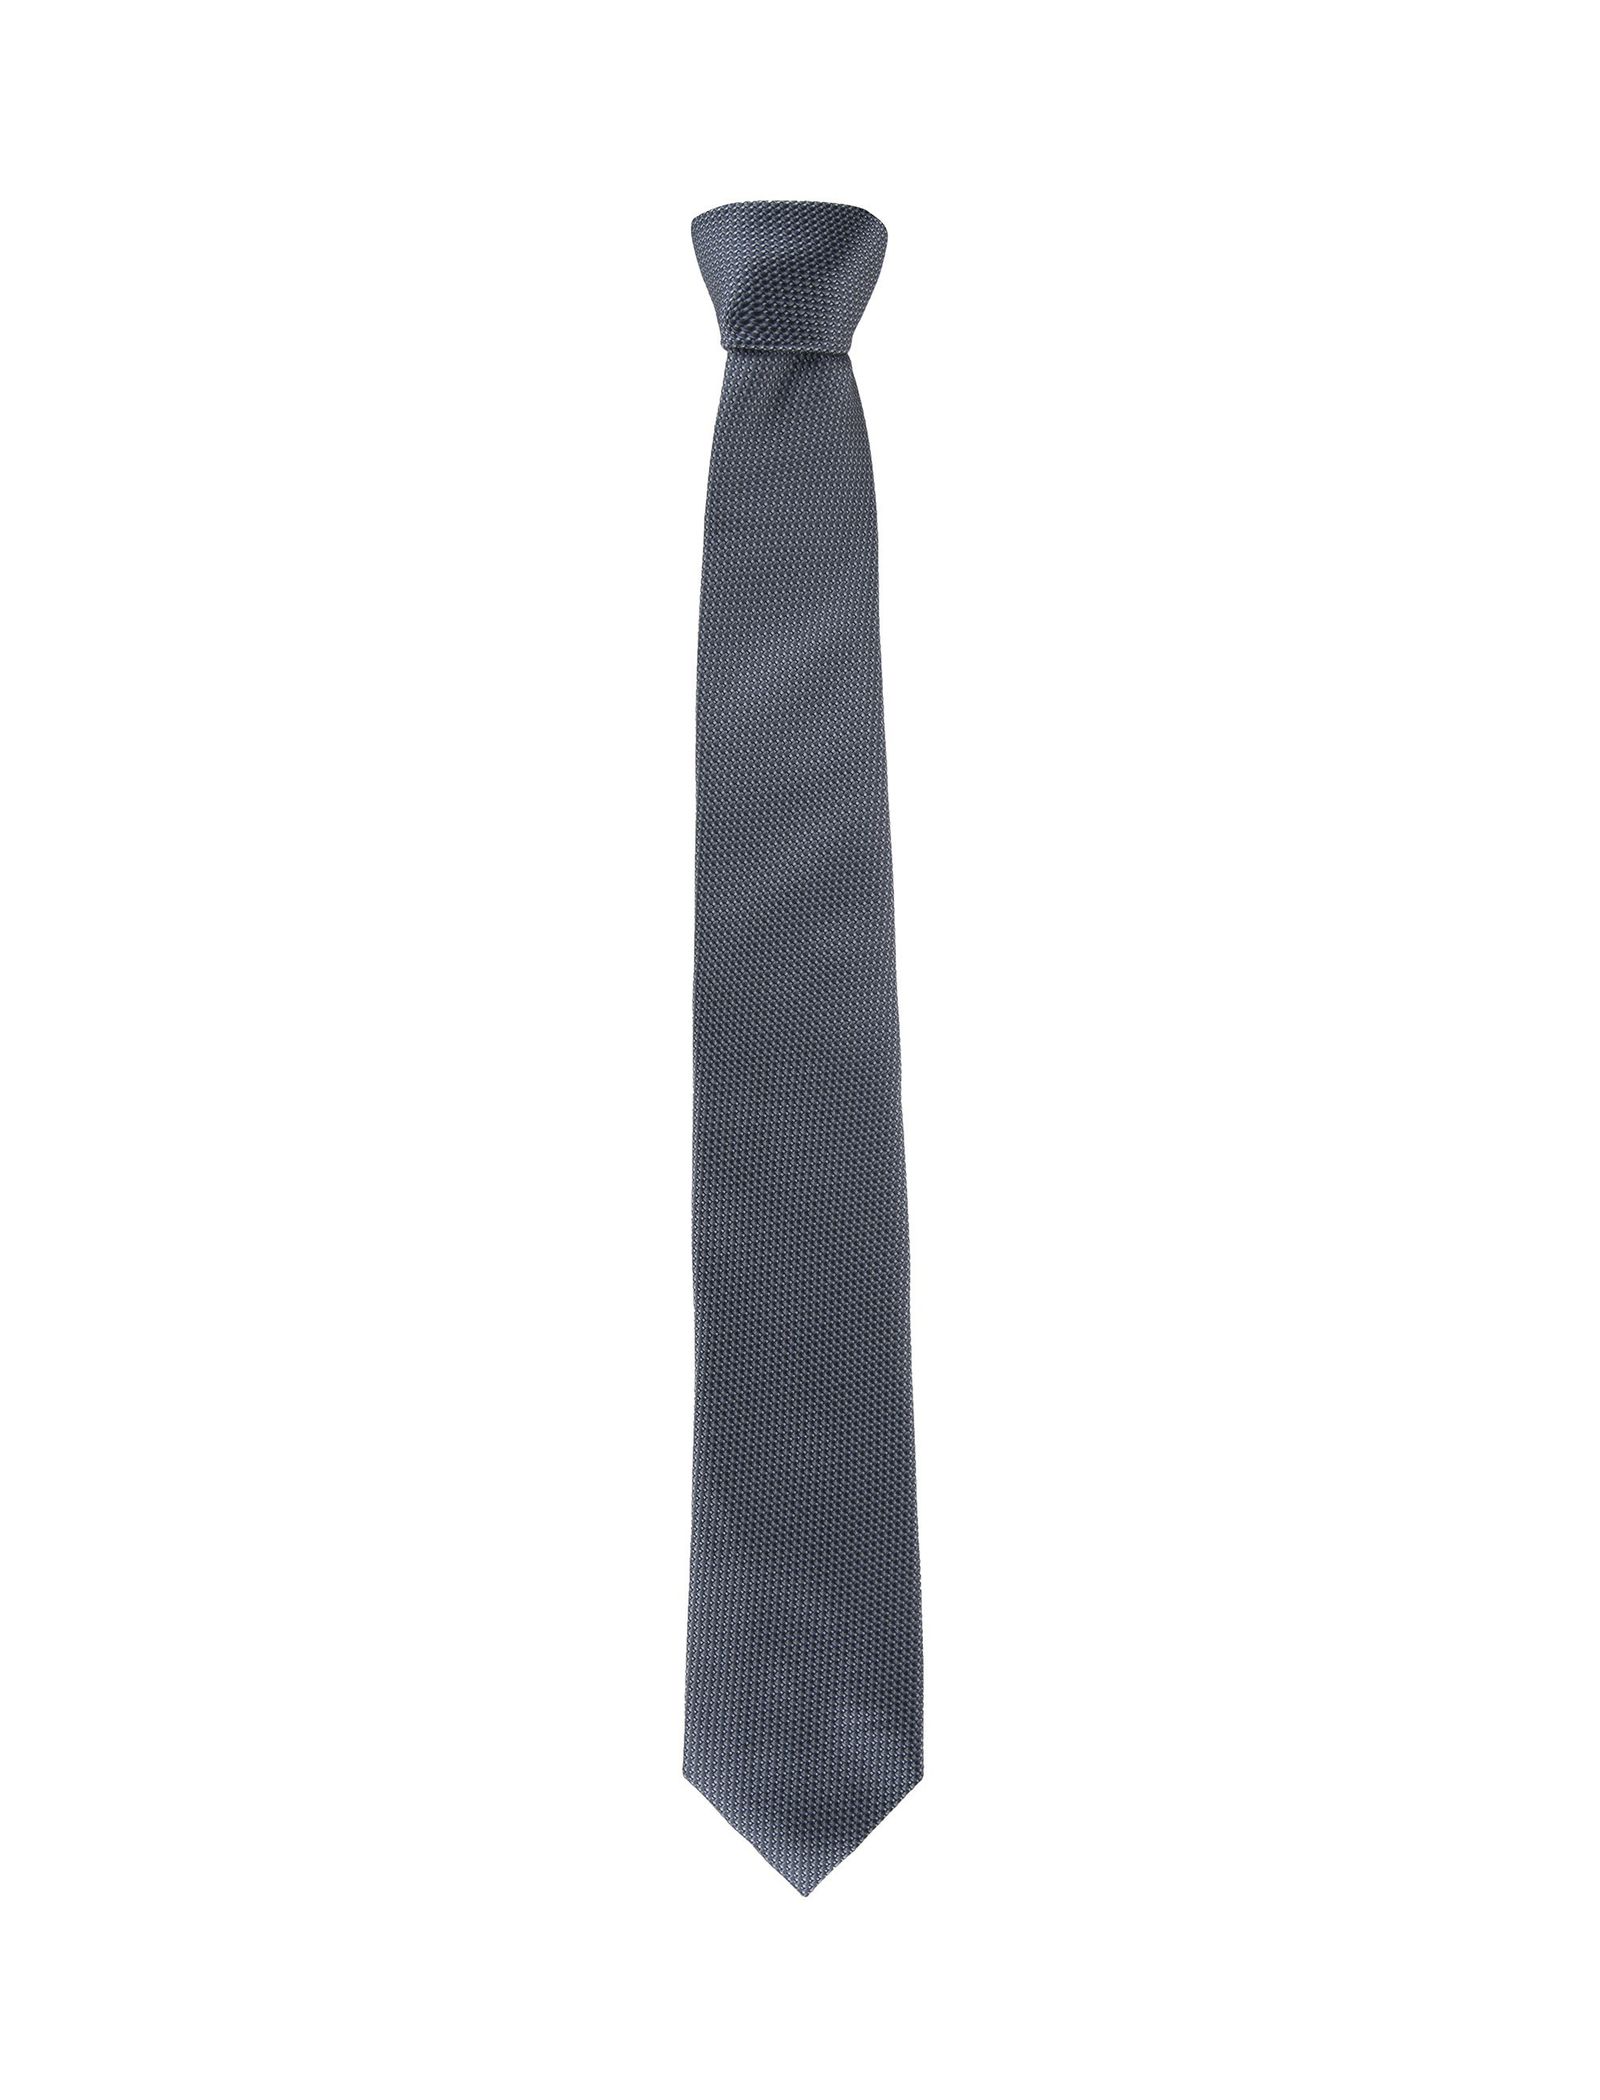 کراوات طرح دار مردانه - یوپیم - طوسي - 1